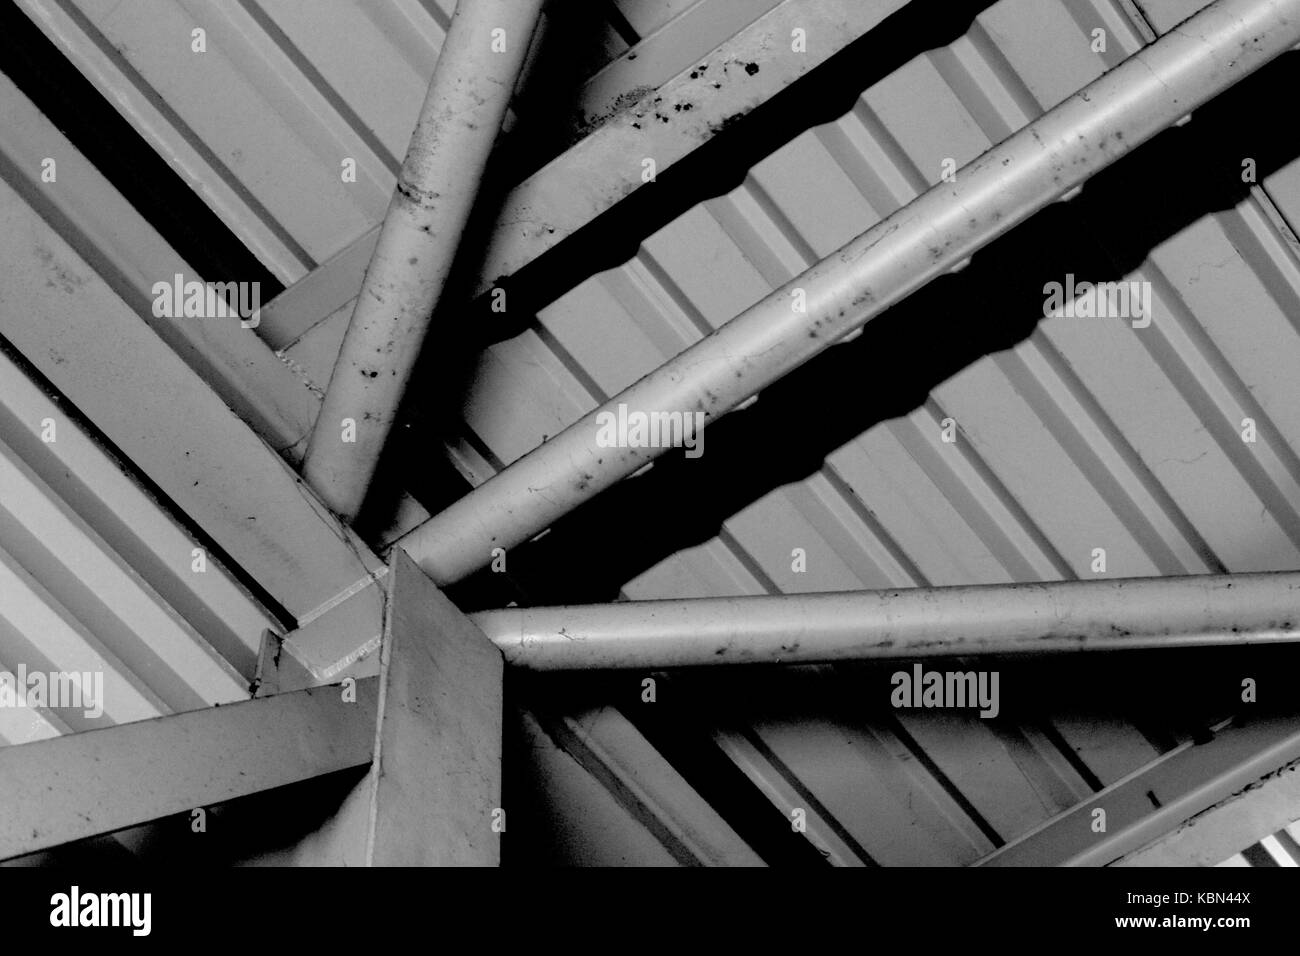 Formalistische Fotografie. Einfache schwarz-weiß Foto von Metall industrielle Architektur mit einem SUNBURST von metallrosten konvergierenden unten links. Stockfoto